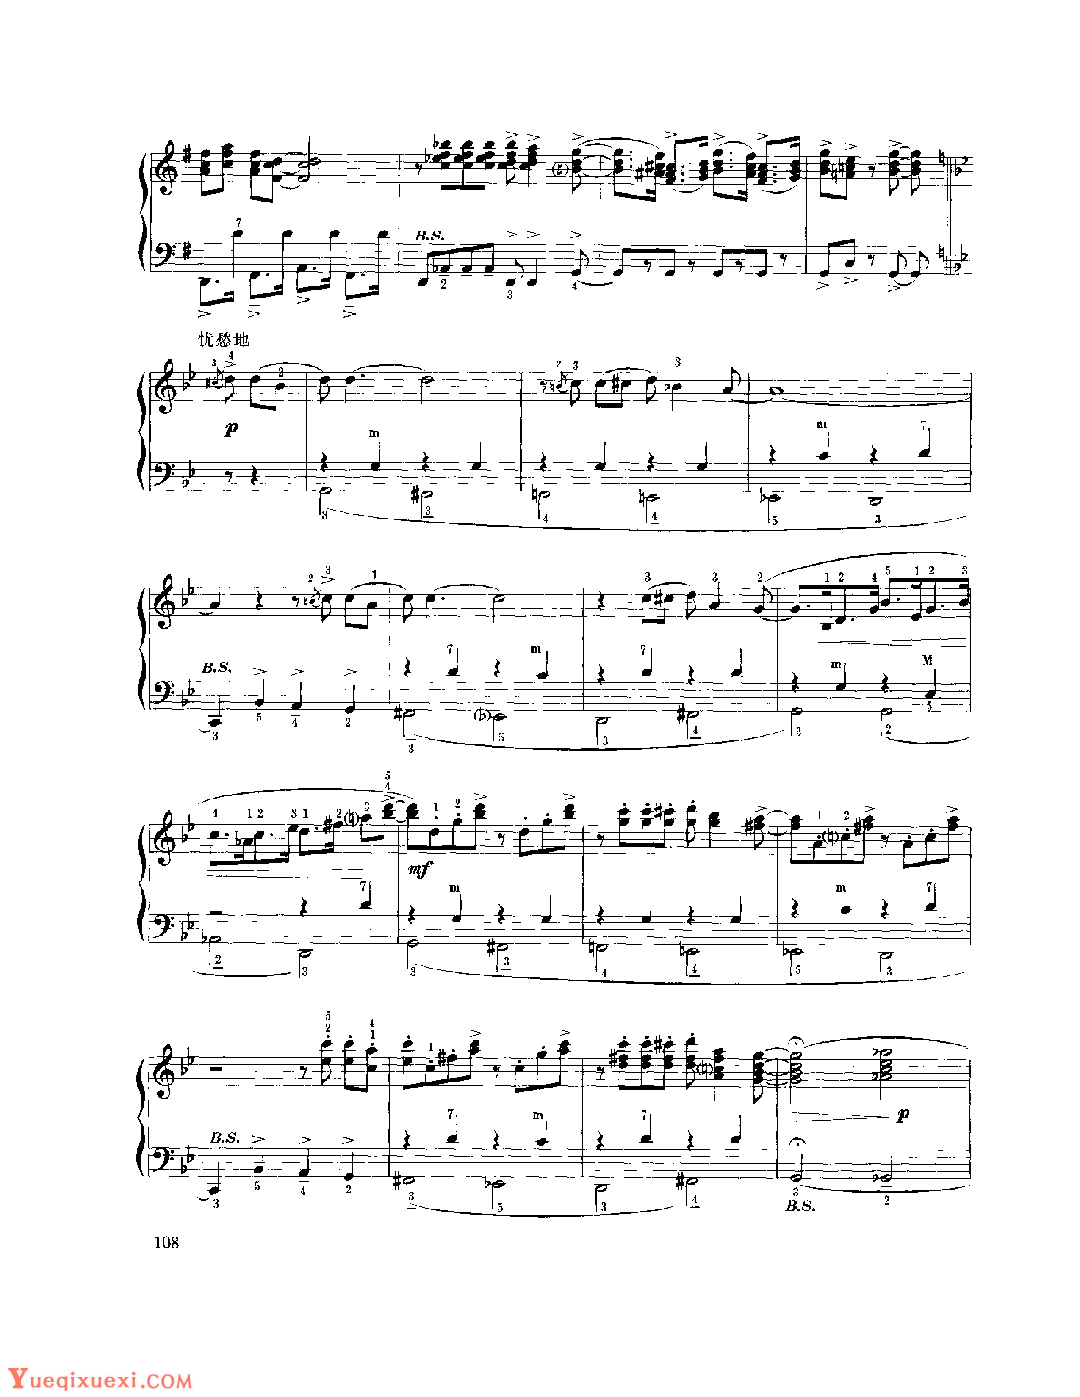 现代手风琴流行乐曲《圣·路易斯布鲁斯》[美]汉迪 曲